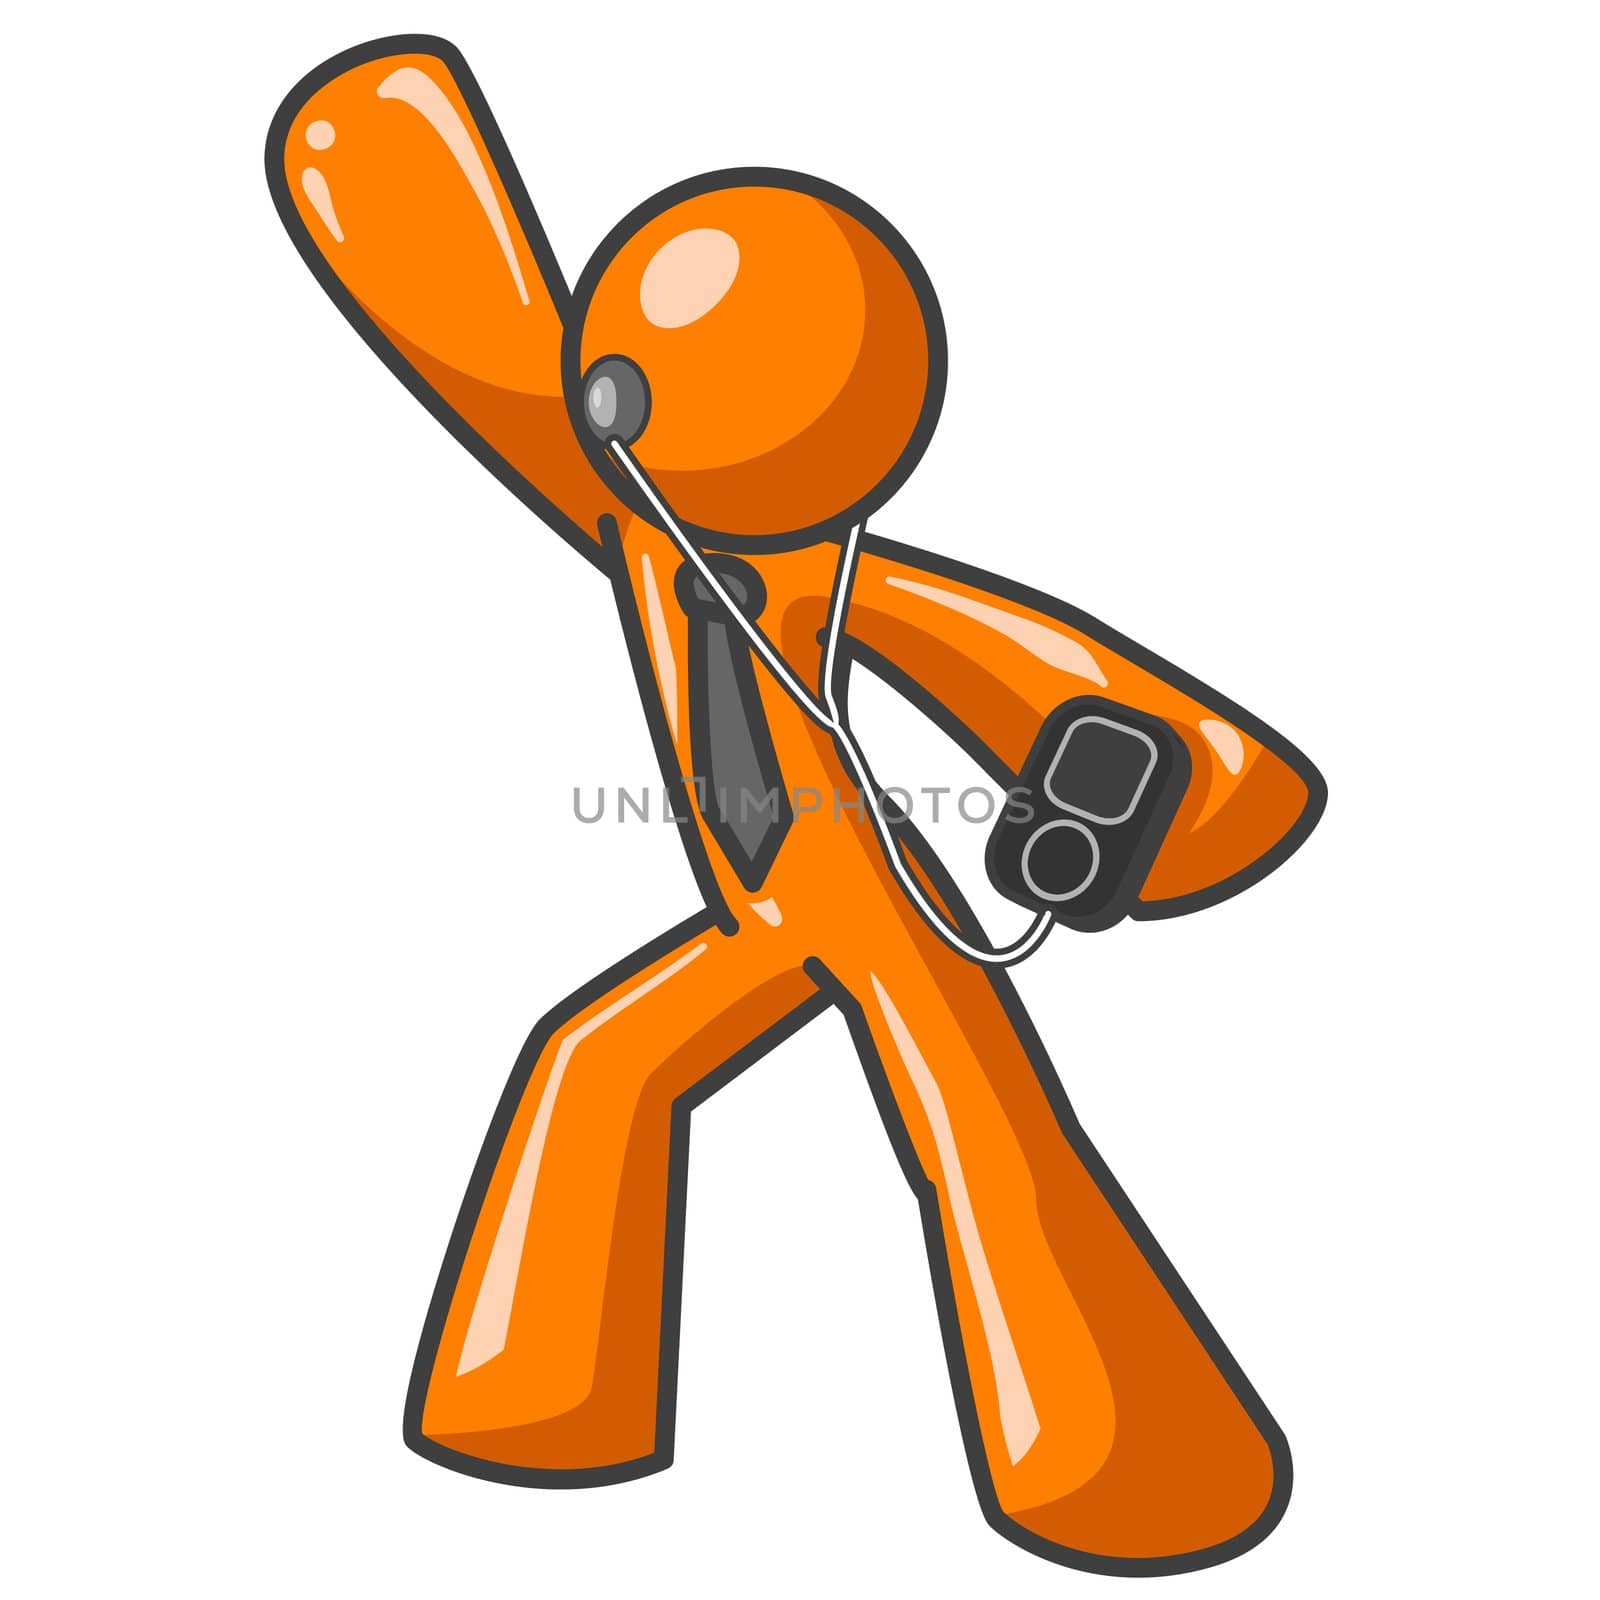 Orange Man MP3 Player by LeoBlanchette